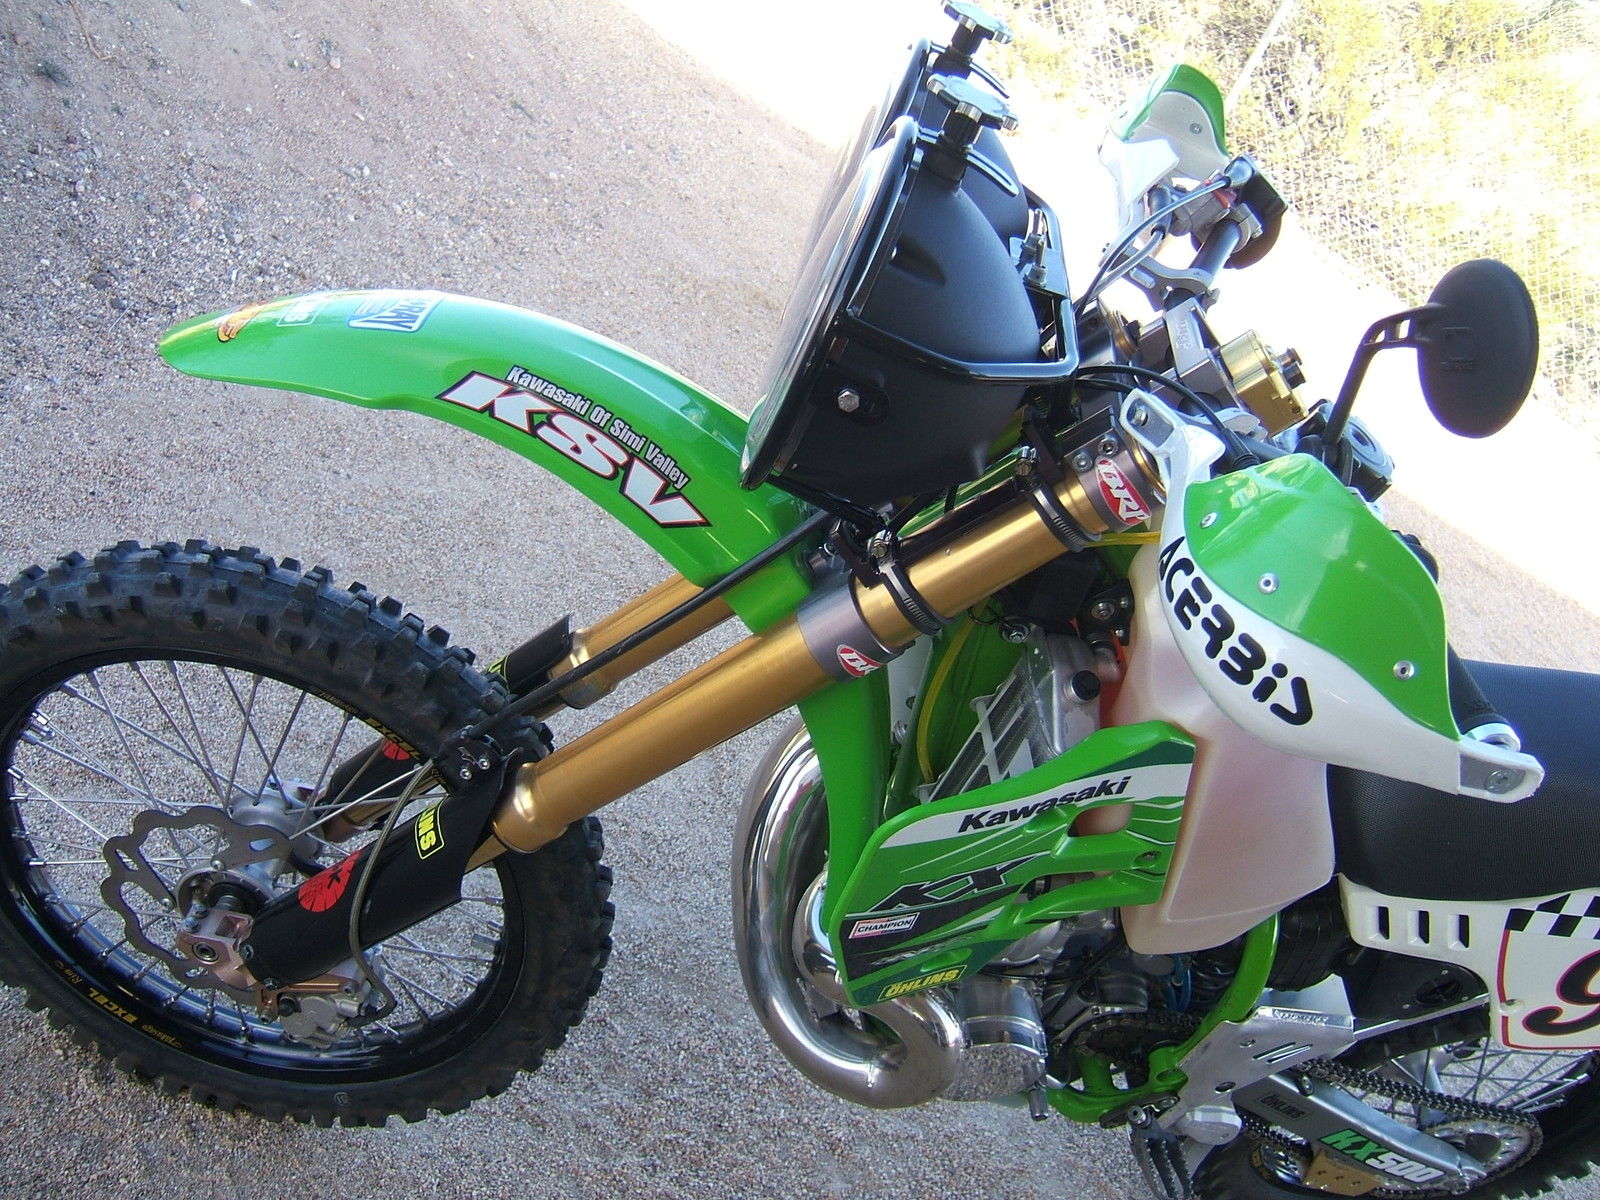 2002 kx500 cool bike 3.JPG